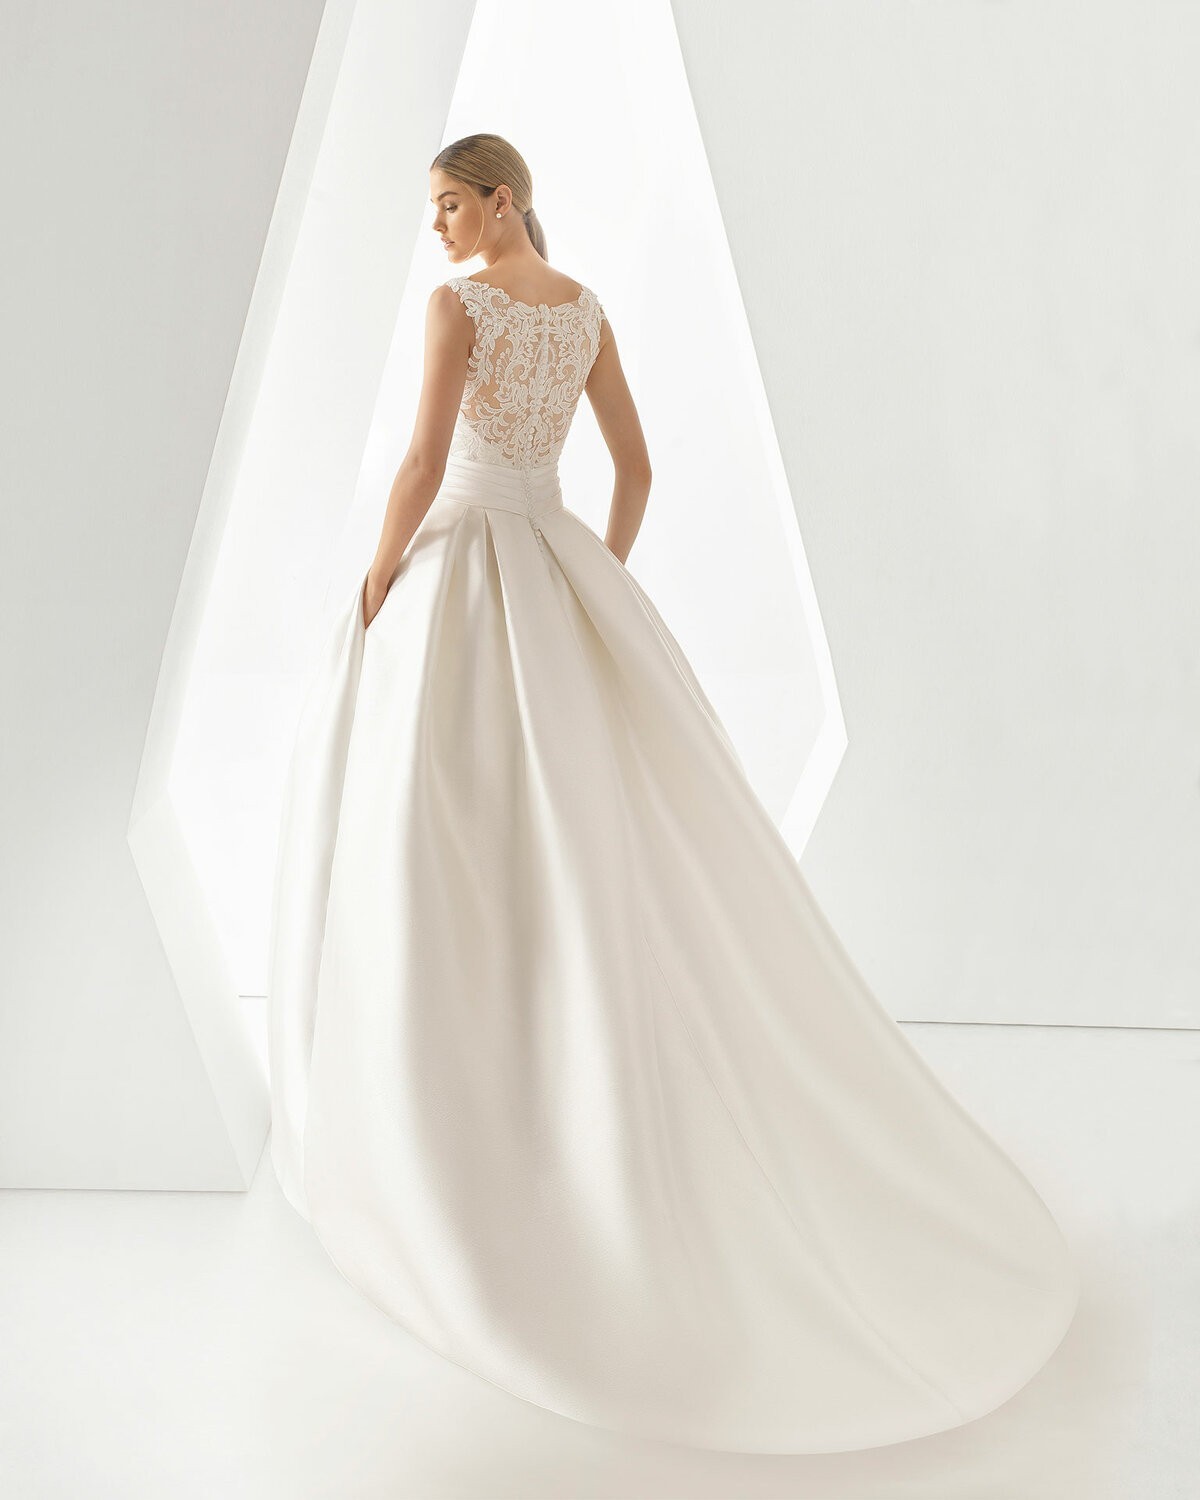 ORDESA - abito da sposa collezione 2020 - Rosa Clarà